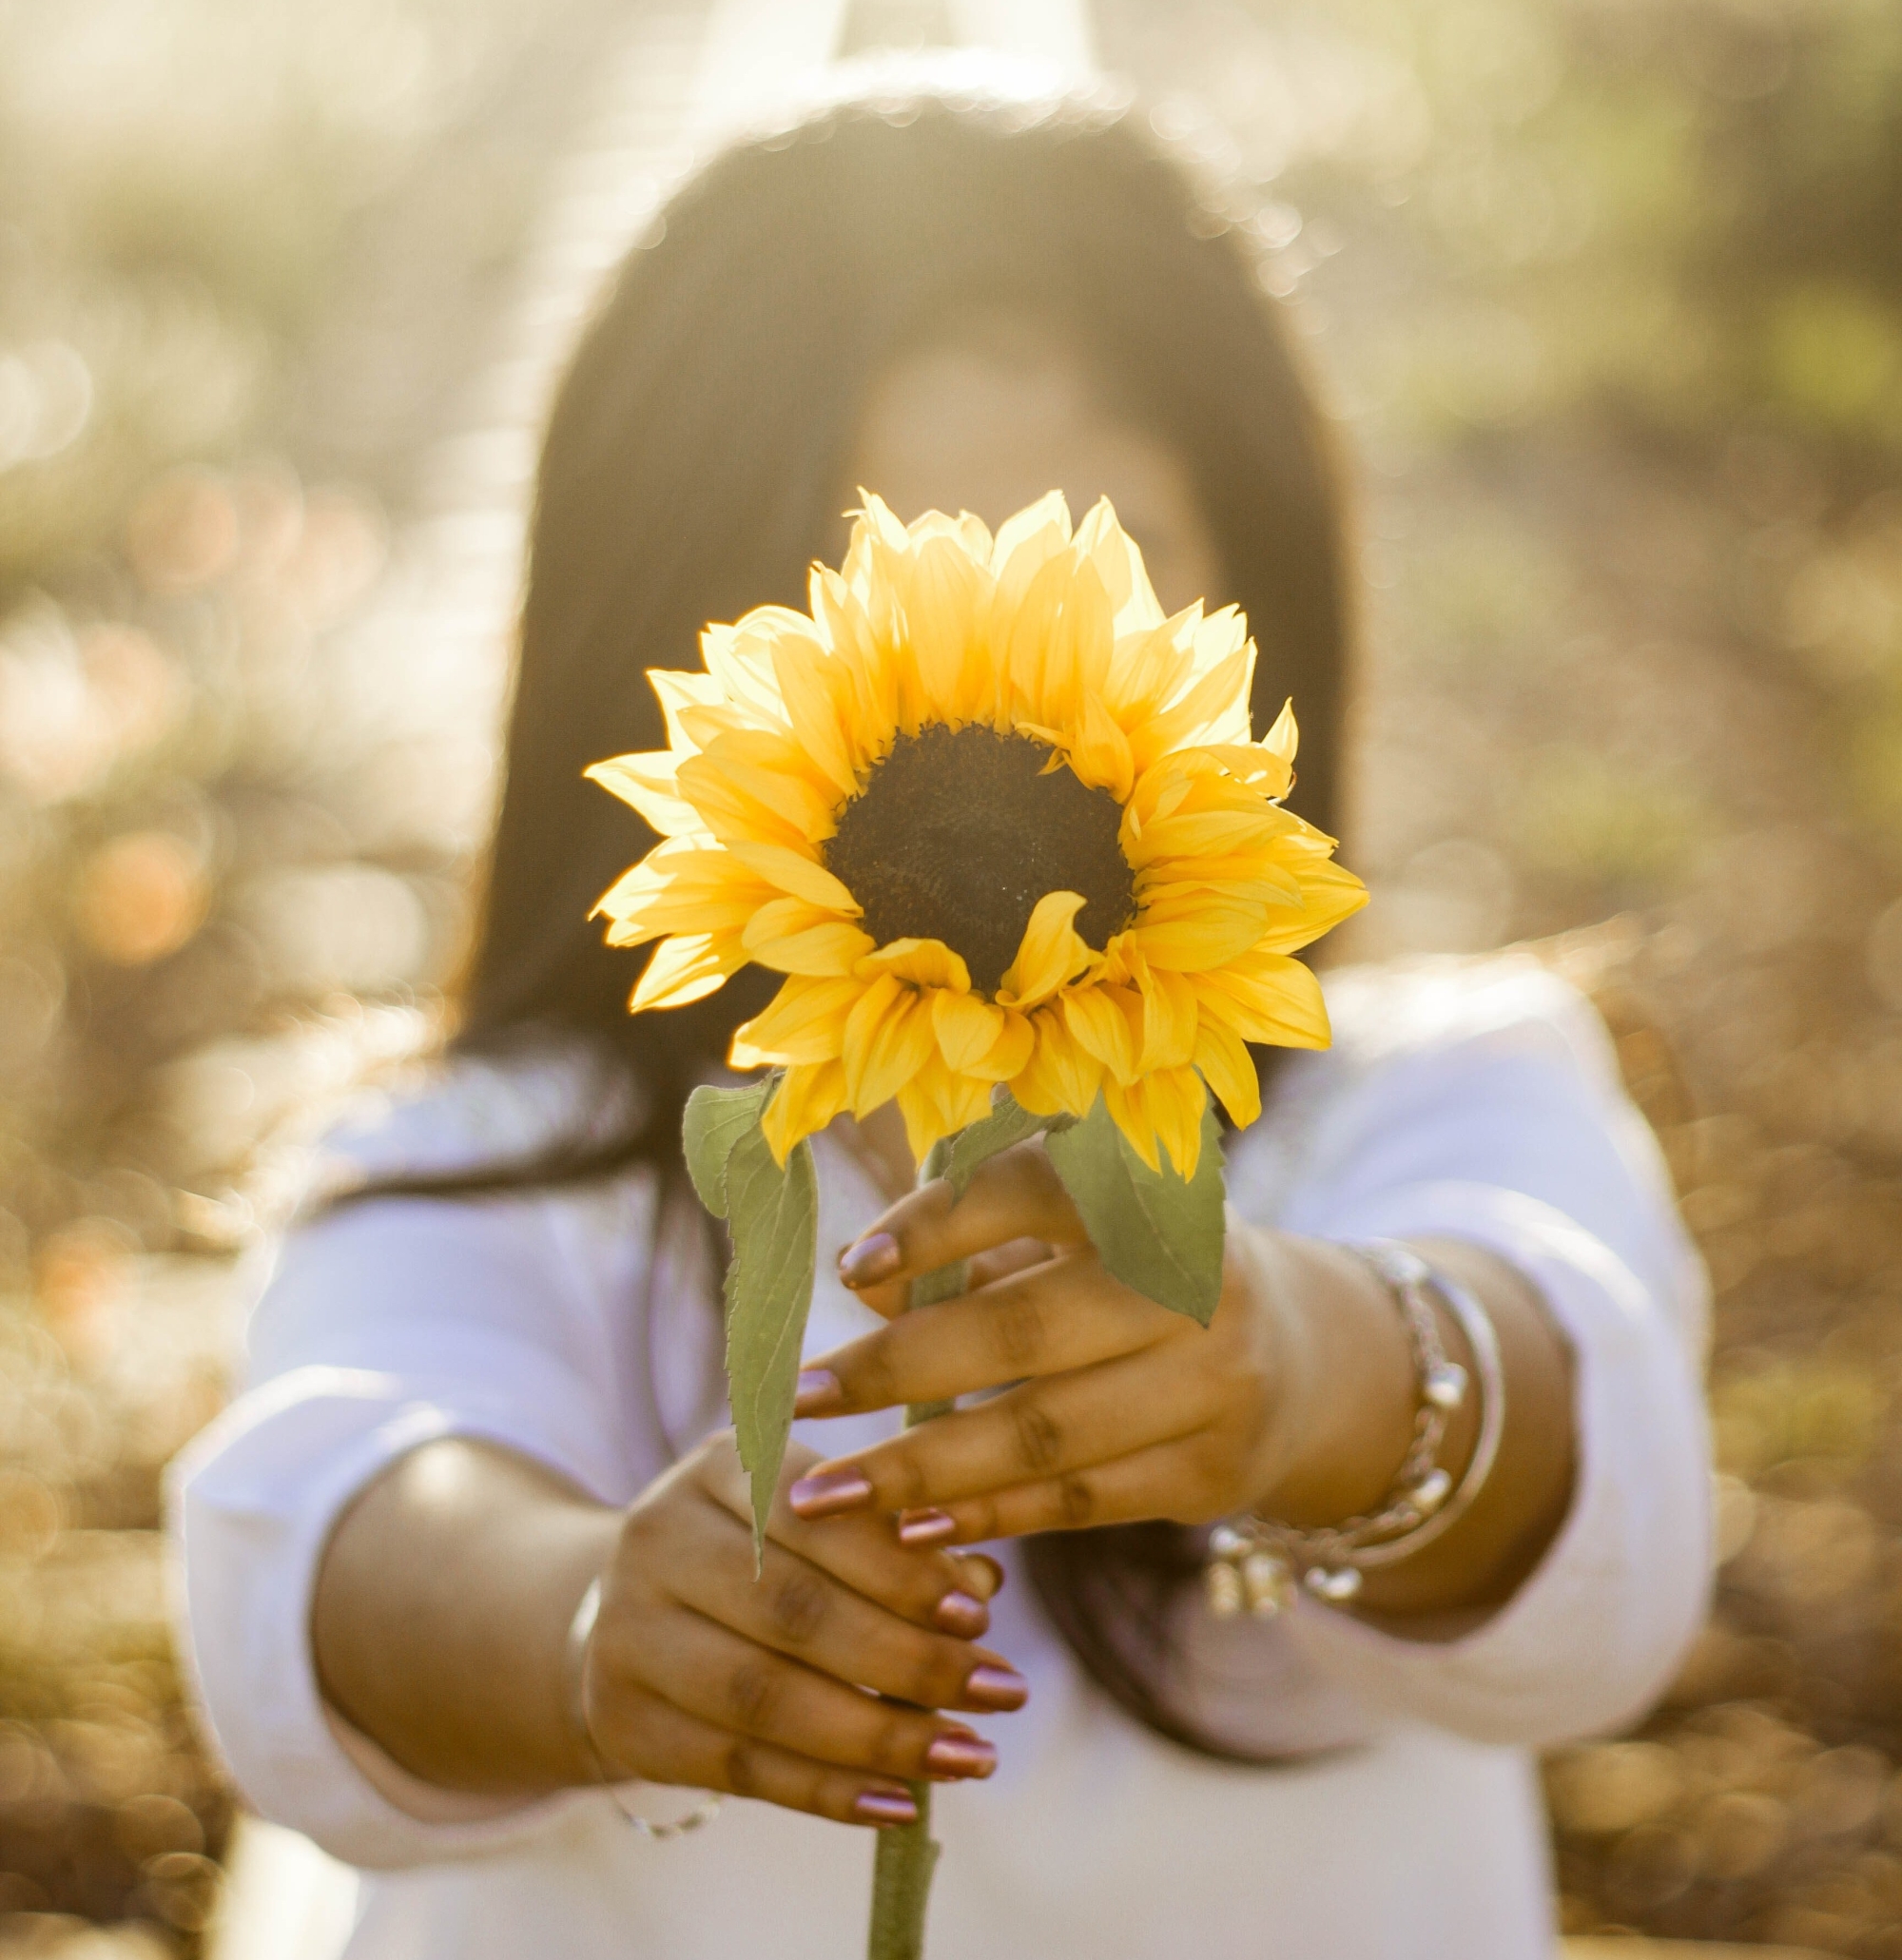 woman offering a sunflower